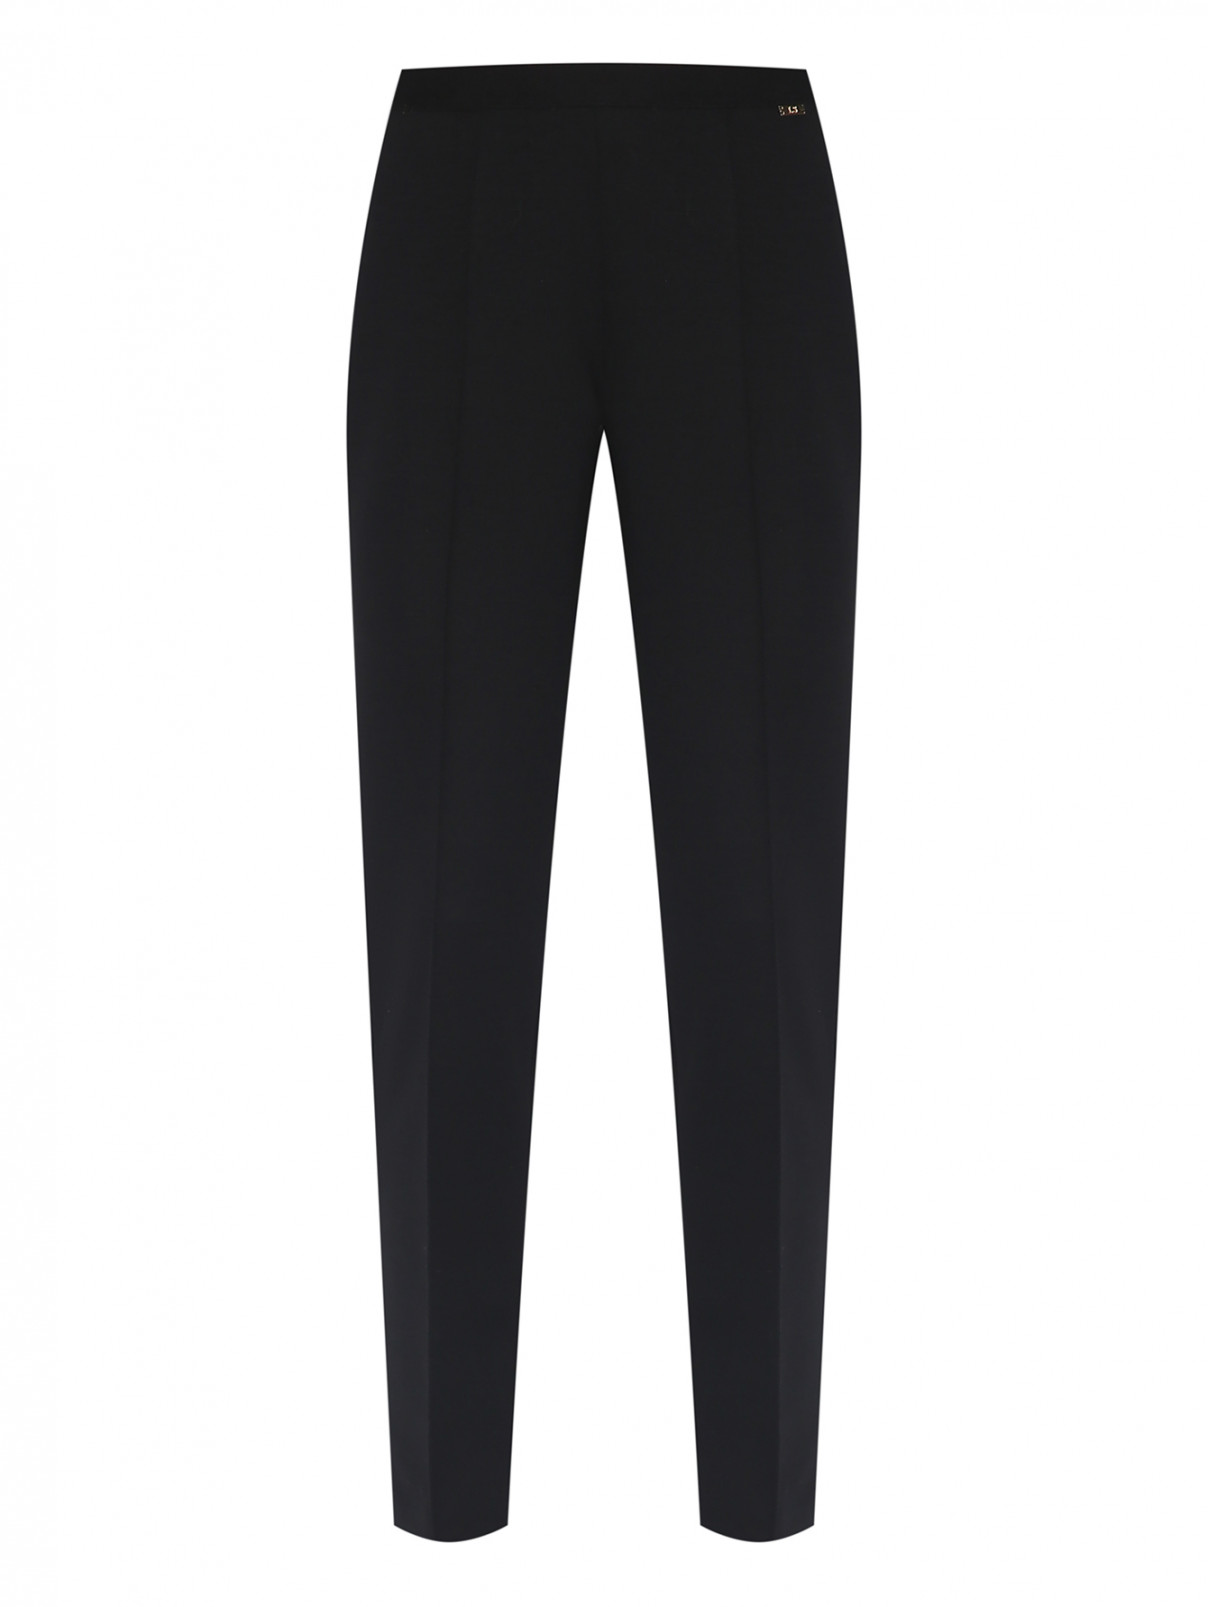 Трикотажные брюки из шерсти Luisa Spagnoli  –  Общий вид  – Цвет:  Черный